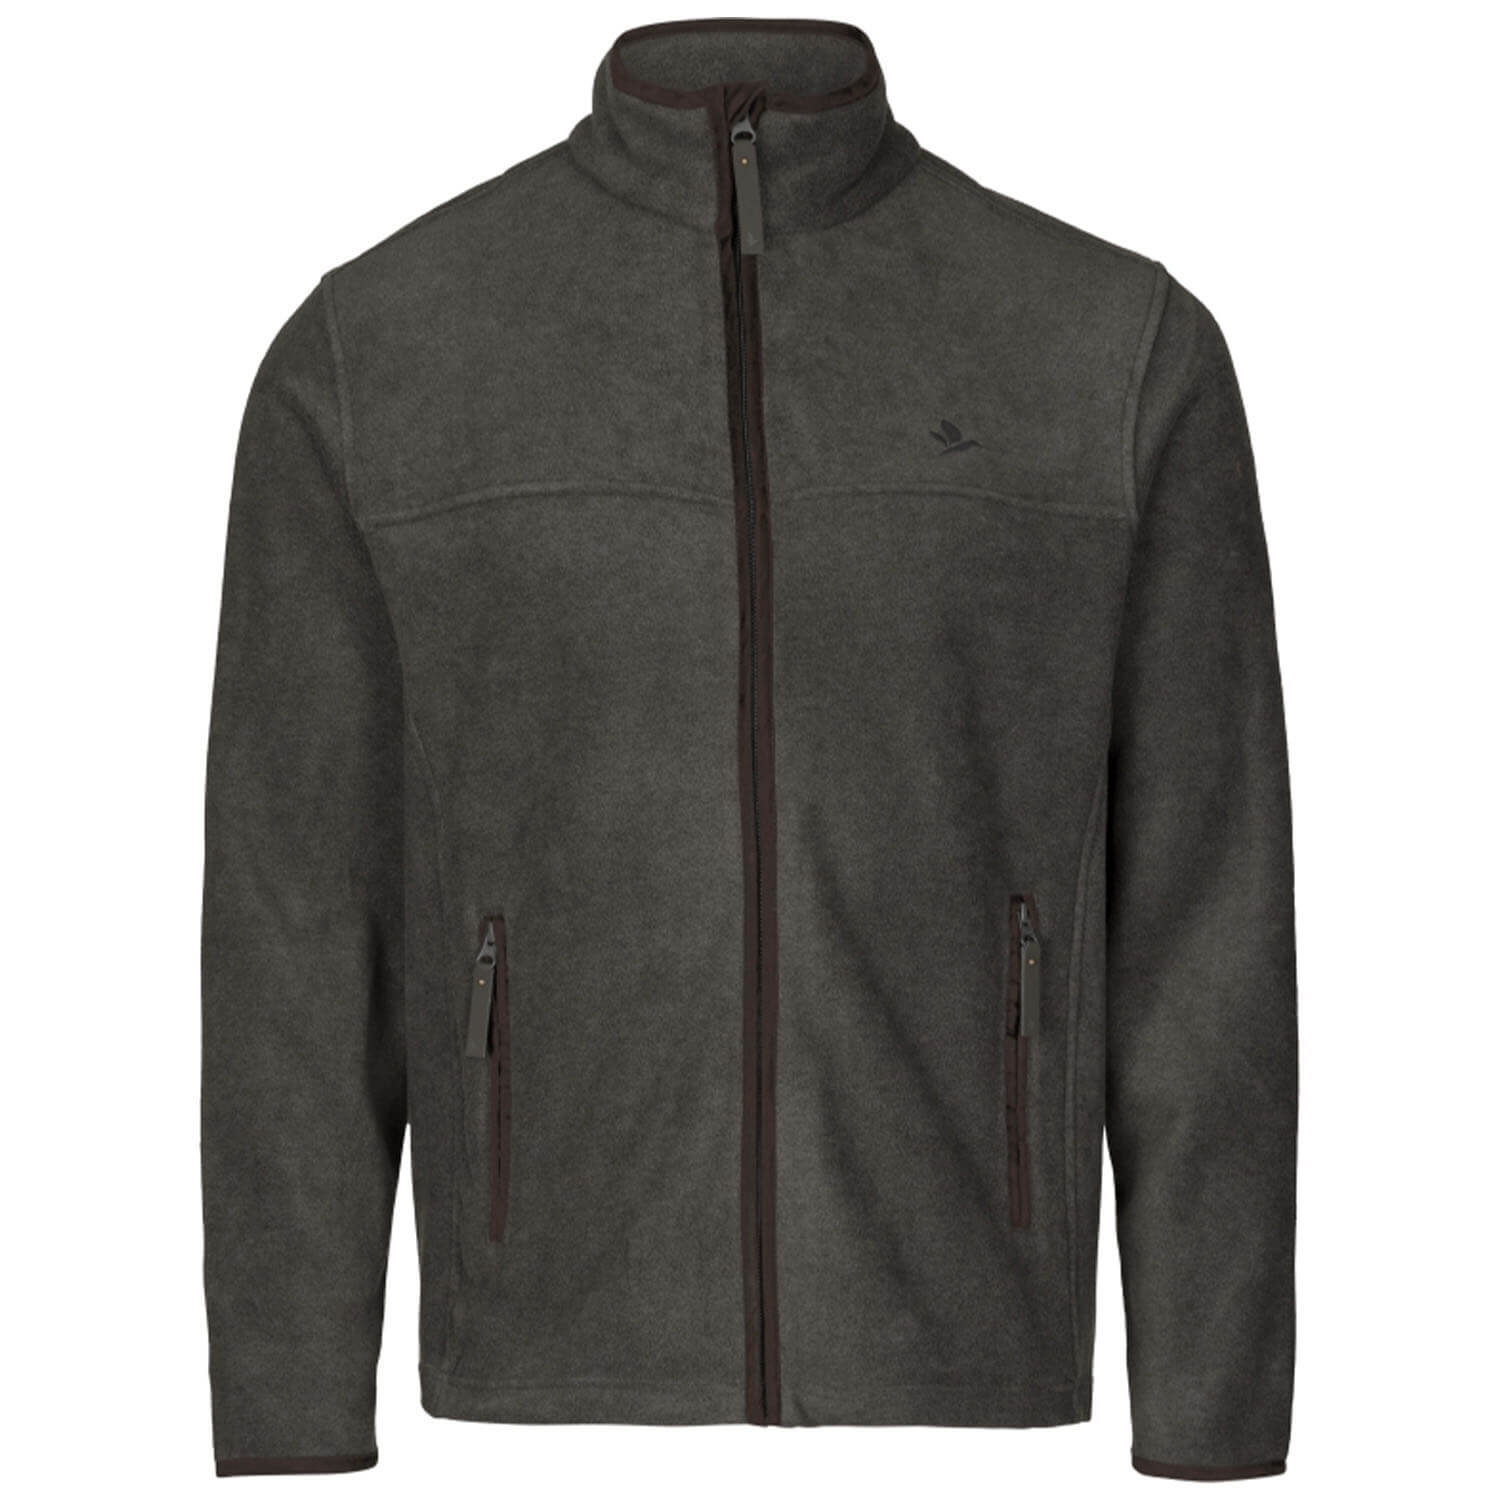  Seeland fleece jacket Woodcock Earl (Dark Grey Melange)